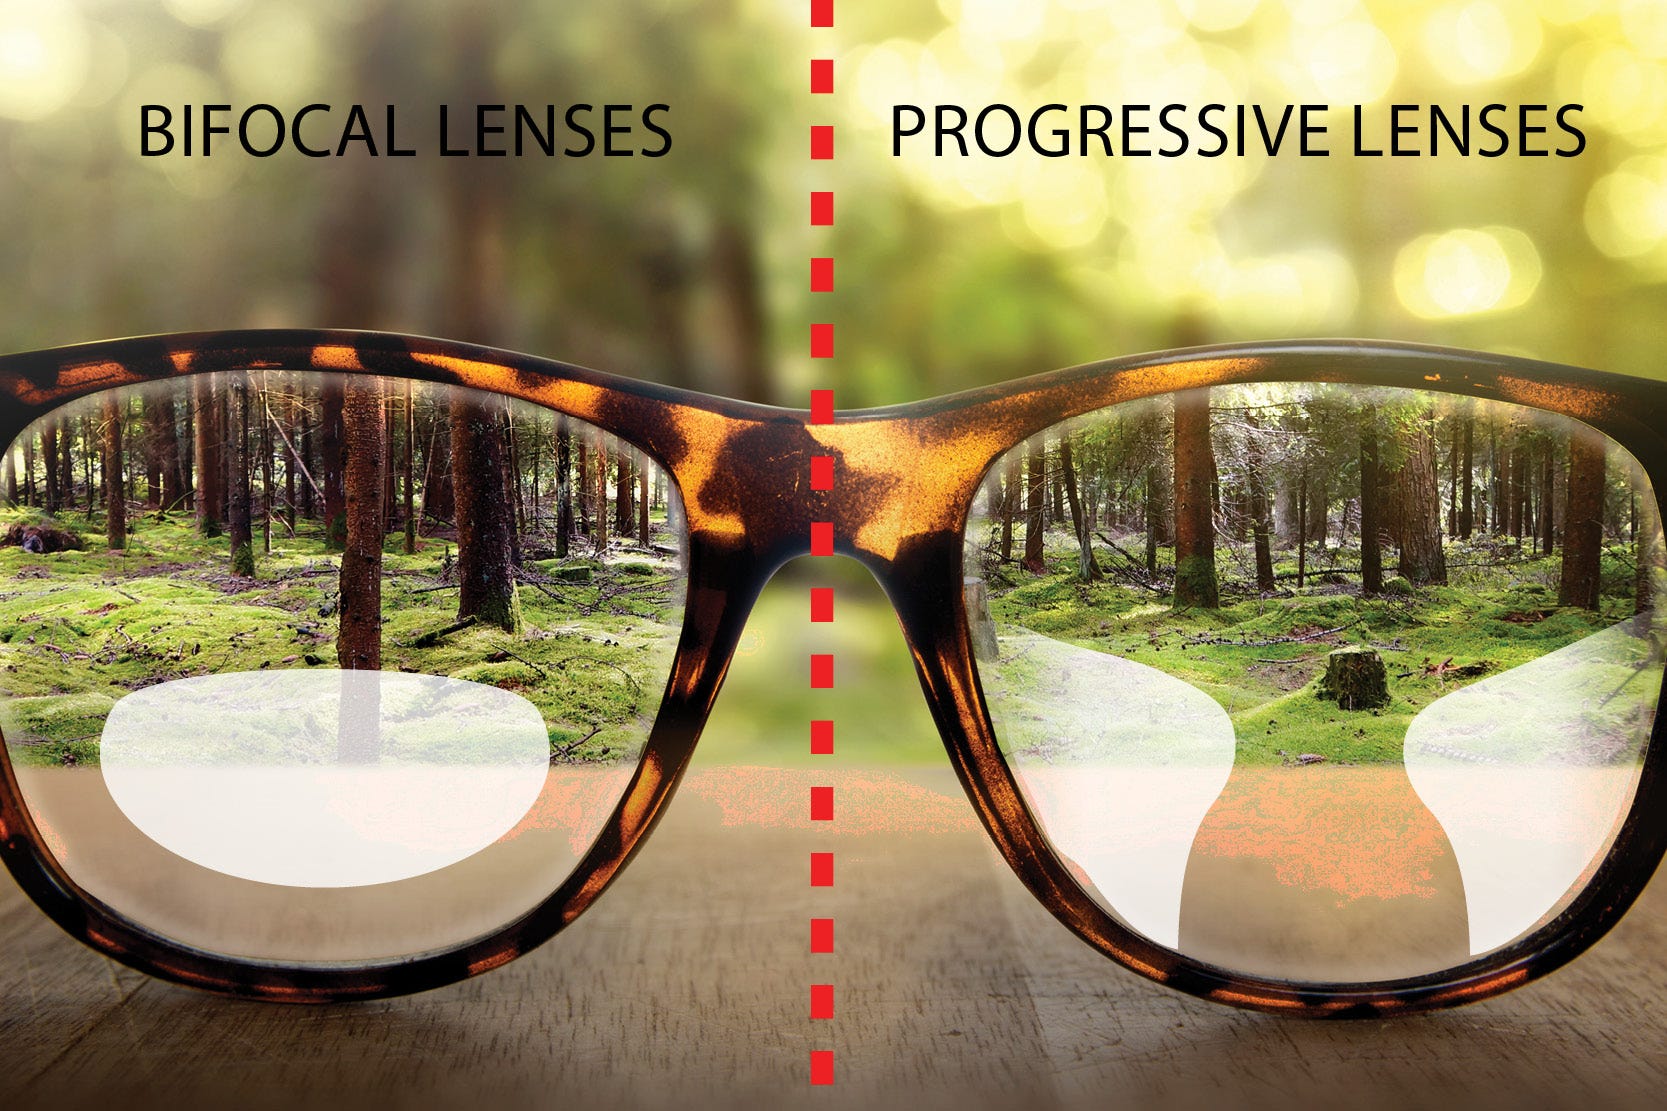 Progressive Lenses Versus Bifocals Lenses